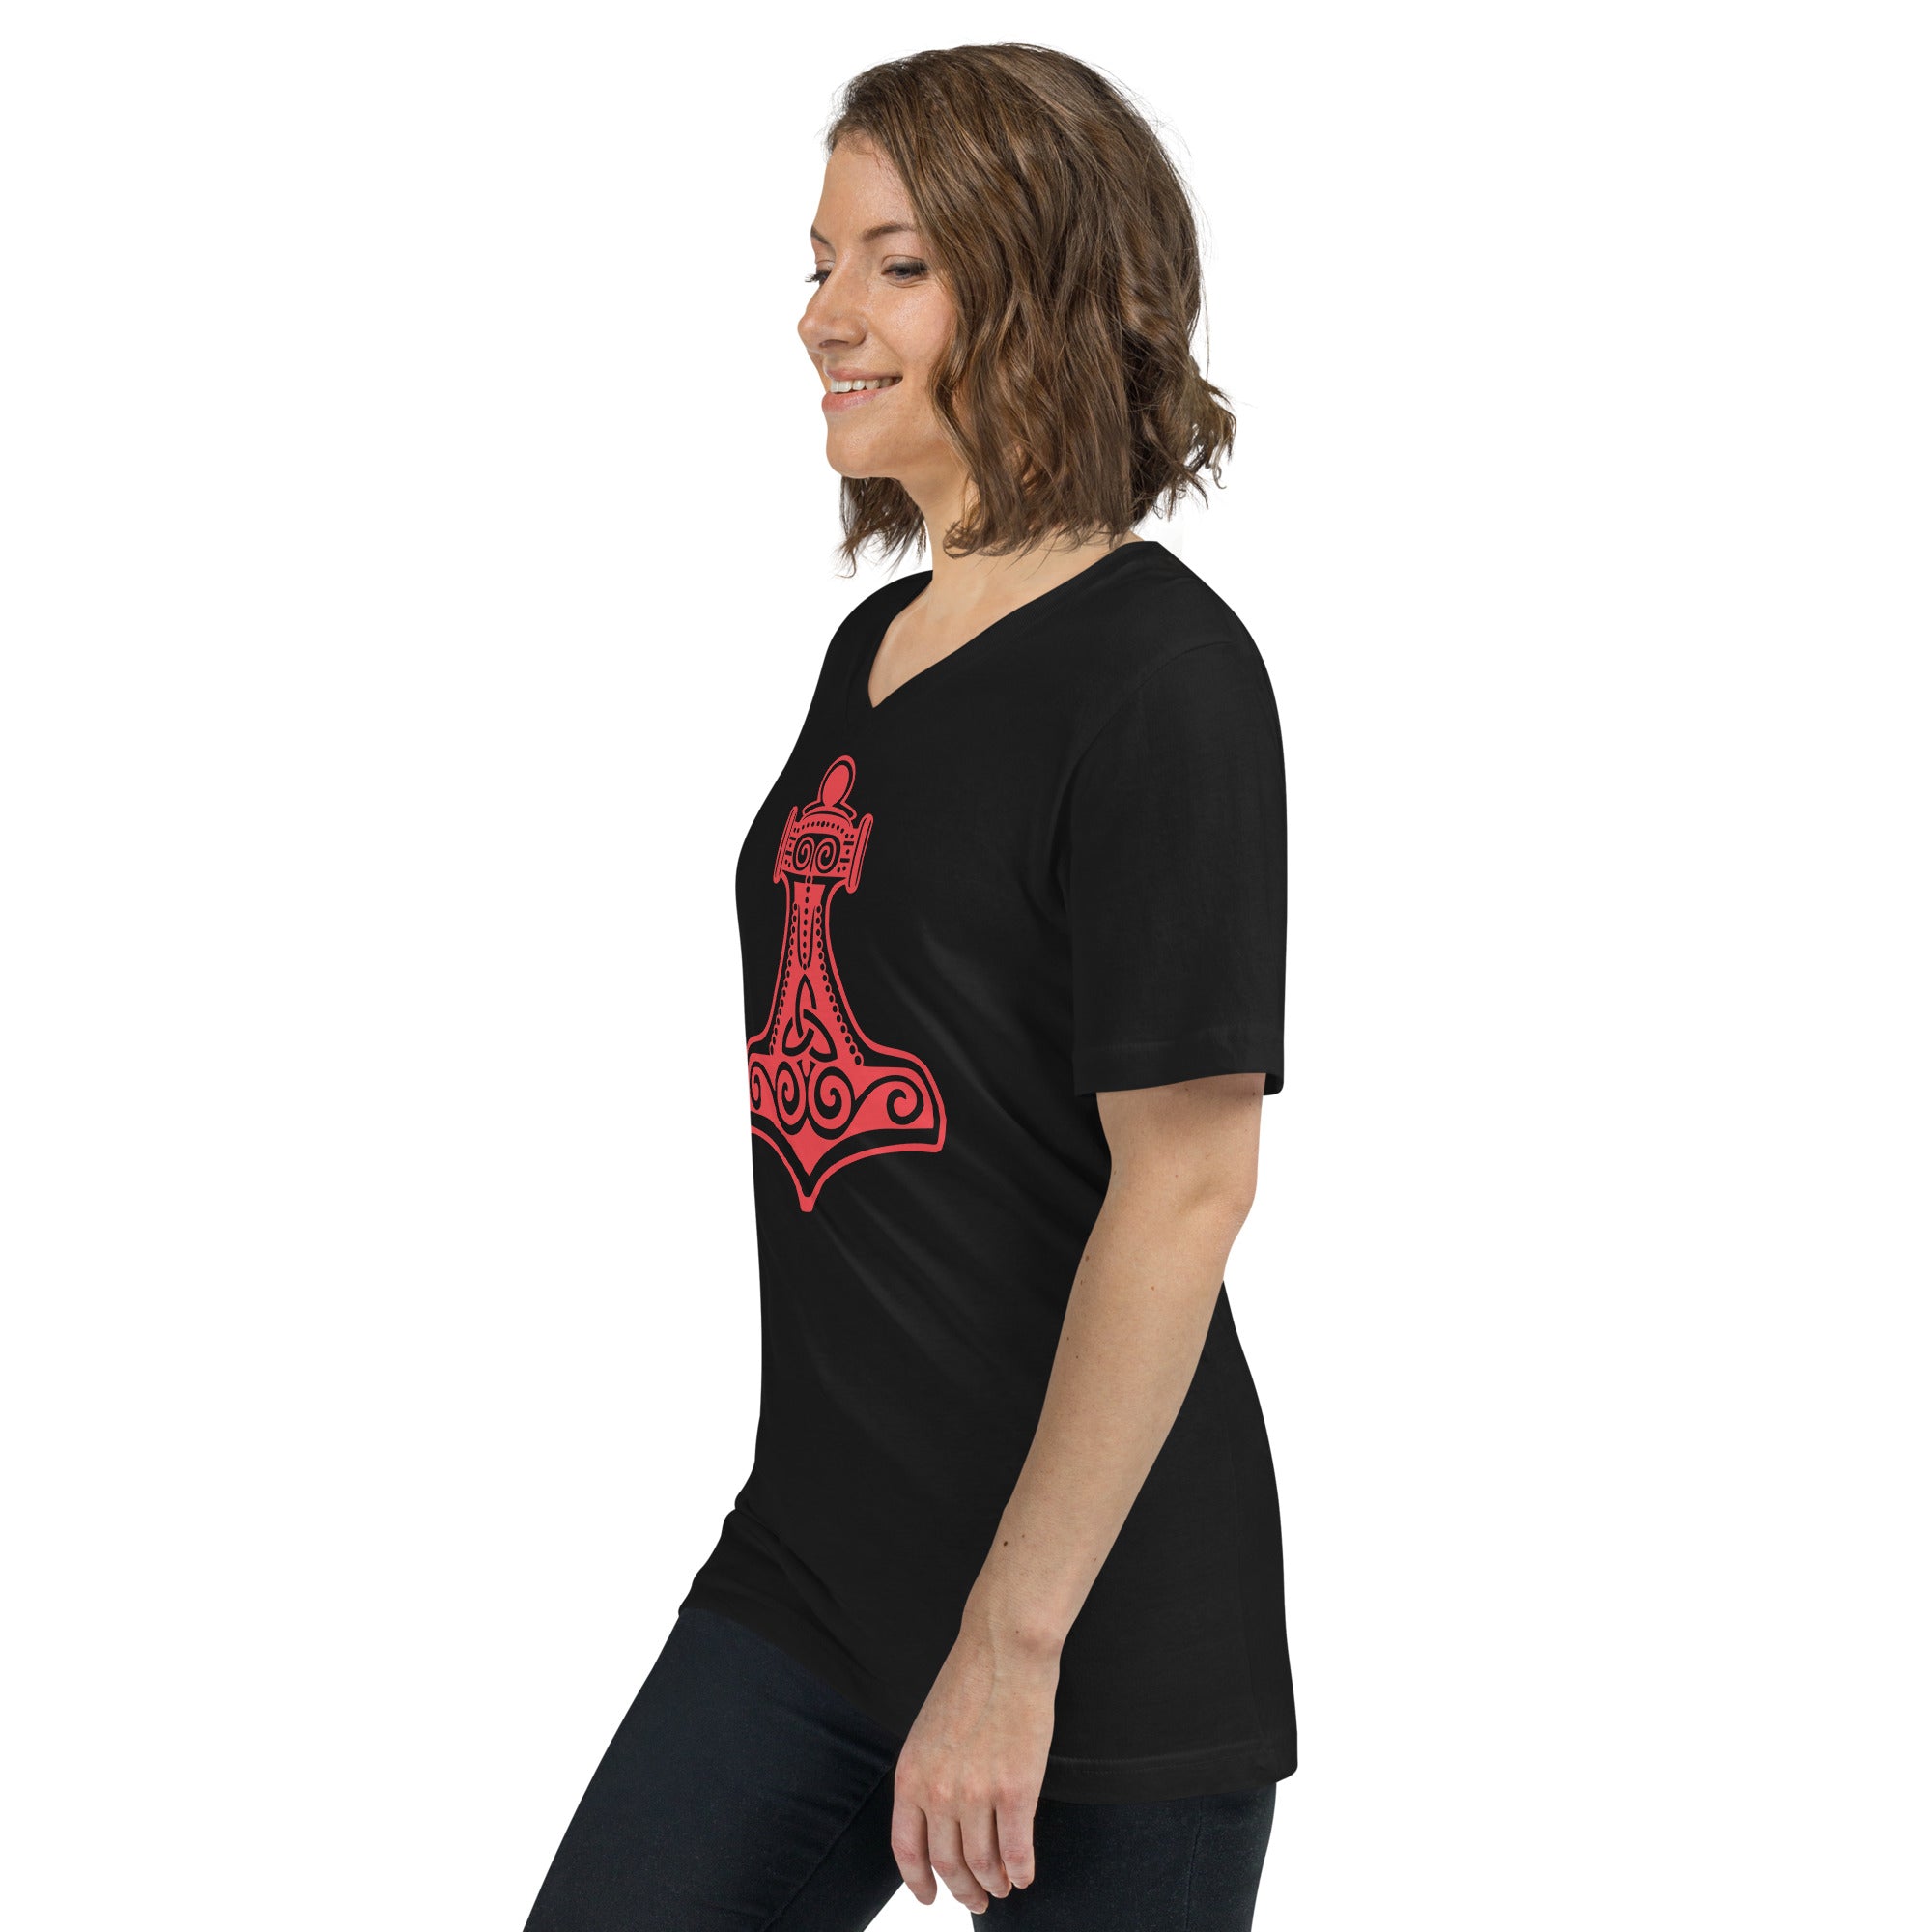 Thor's Hammer Mjolnir Norse Mythology Women’s Short Sleeve V-Neck T-Shirt Red Print - Edge of Life Designs